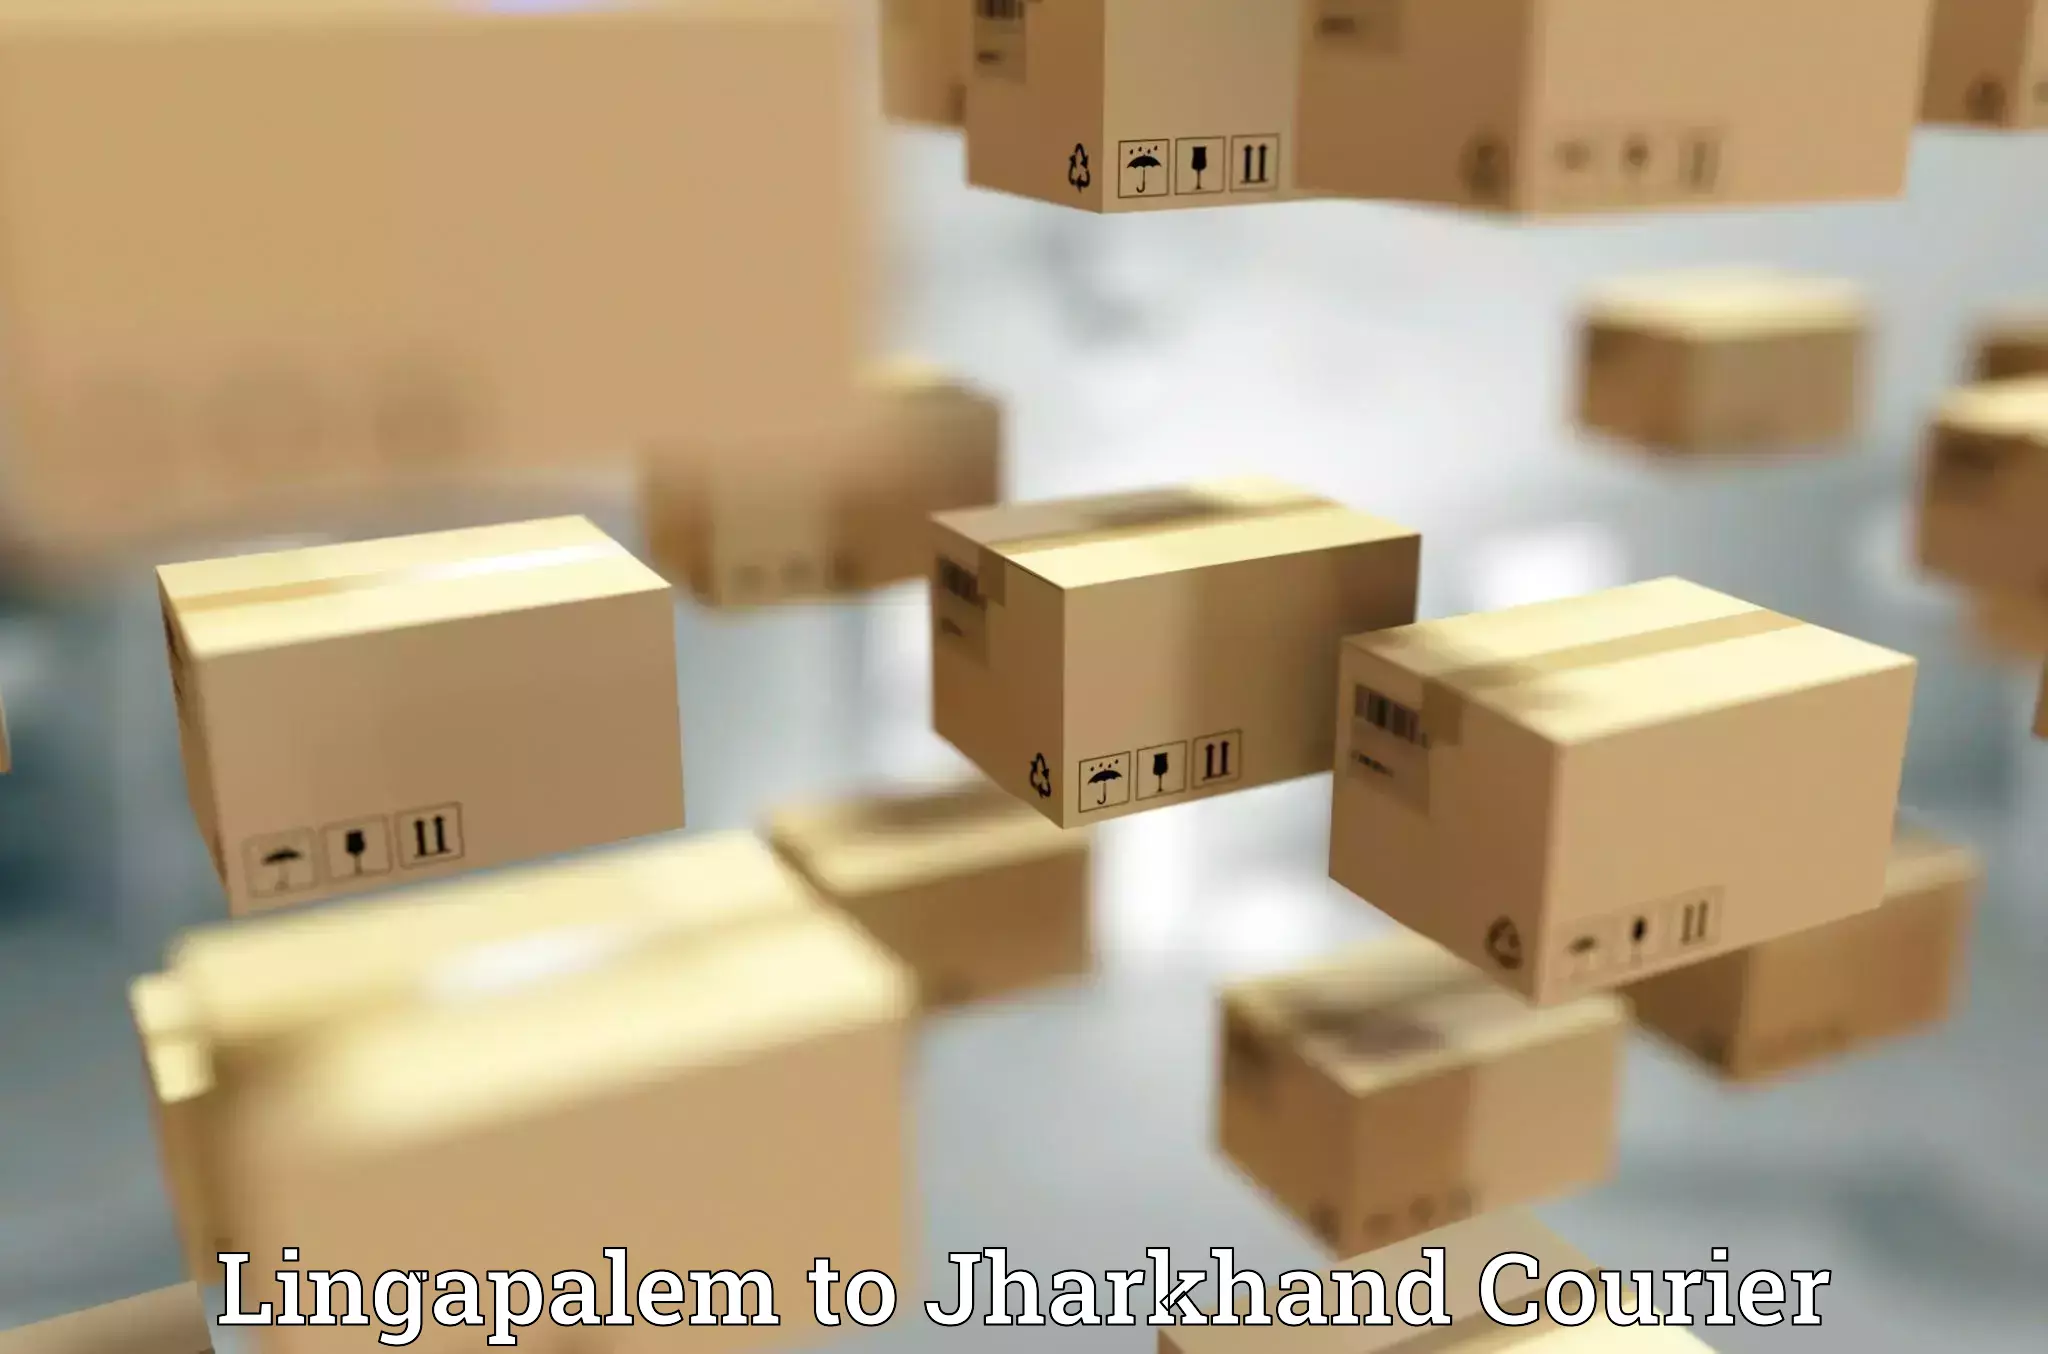 Efficient parcel service Lingapalem to Ranchi